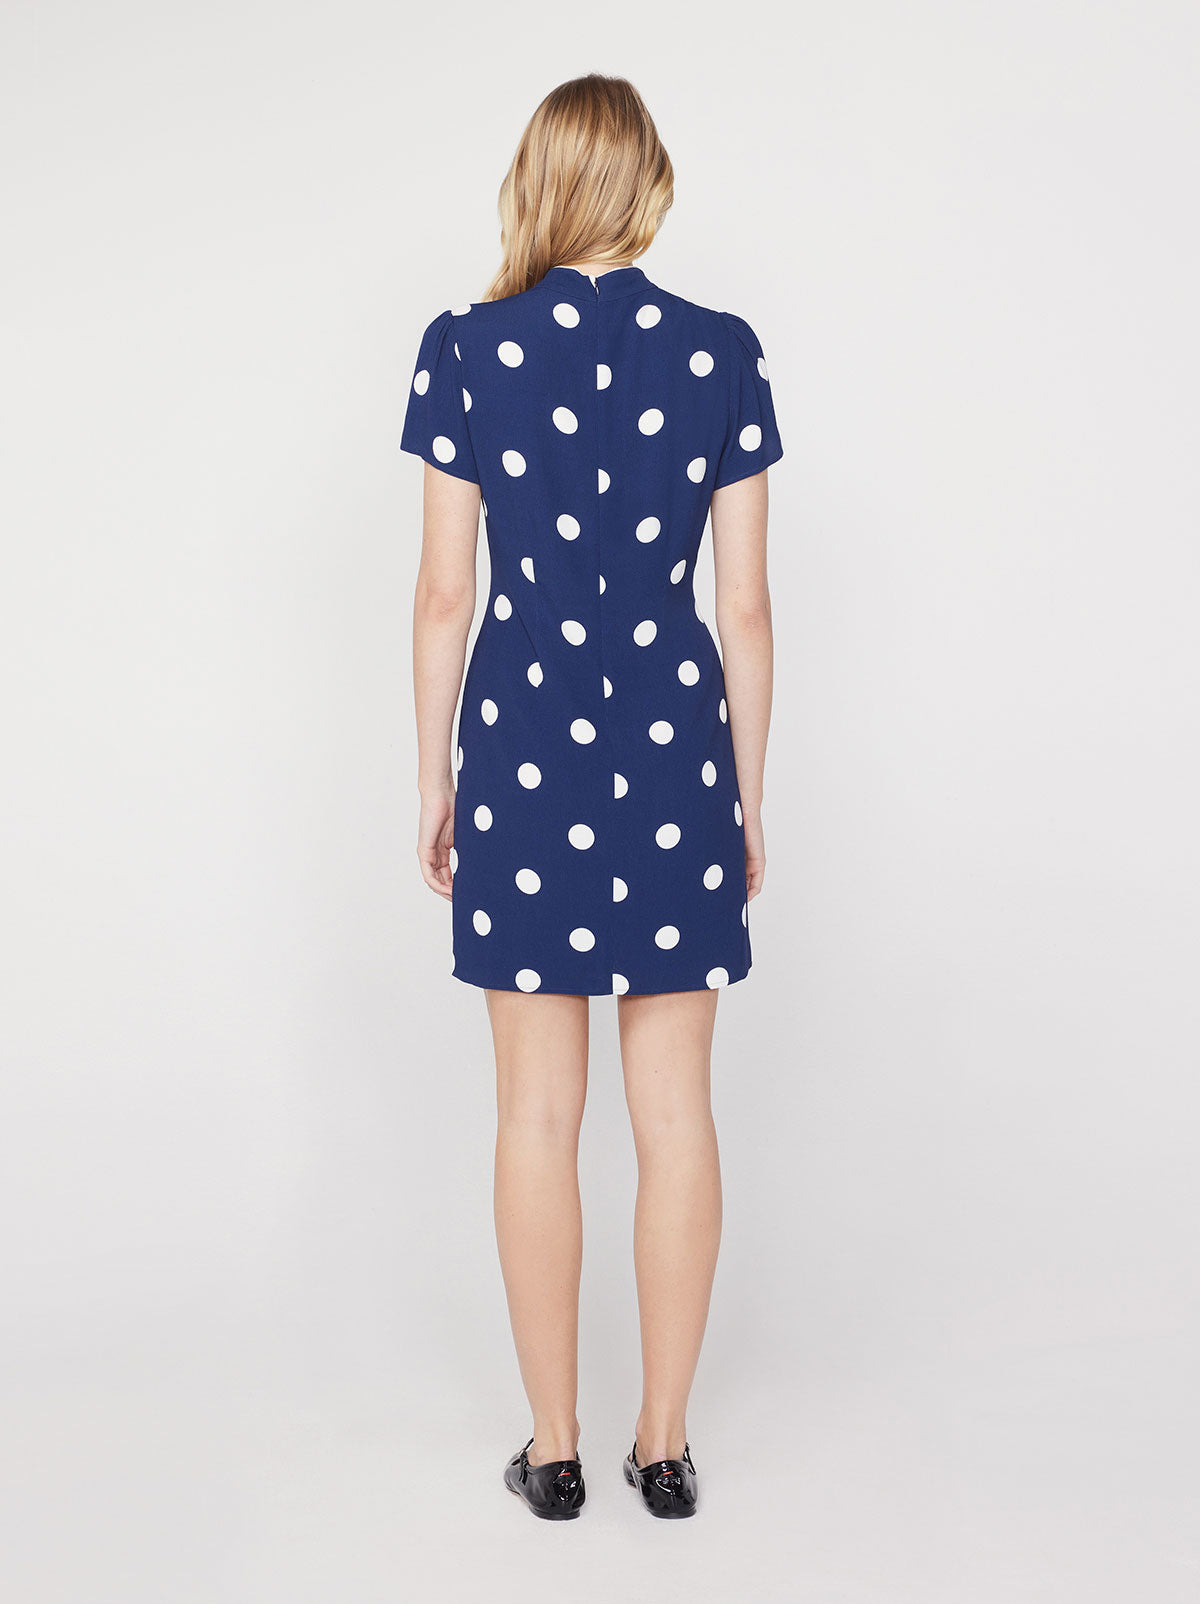 Harlow Navy Polka Dot Mini Dress By KITRI Studio